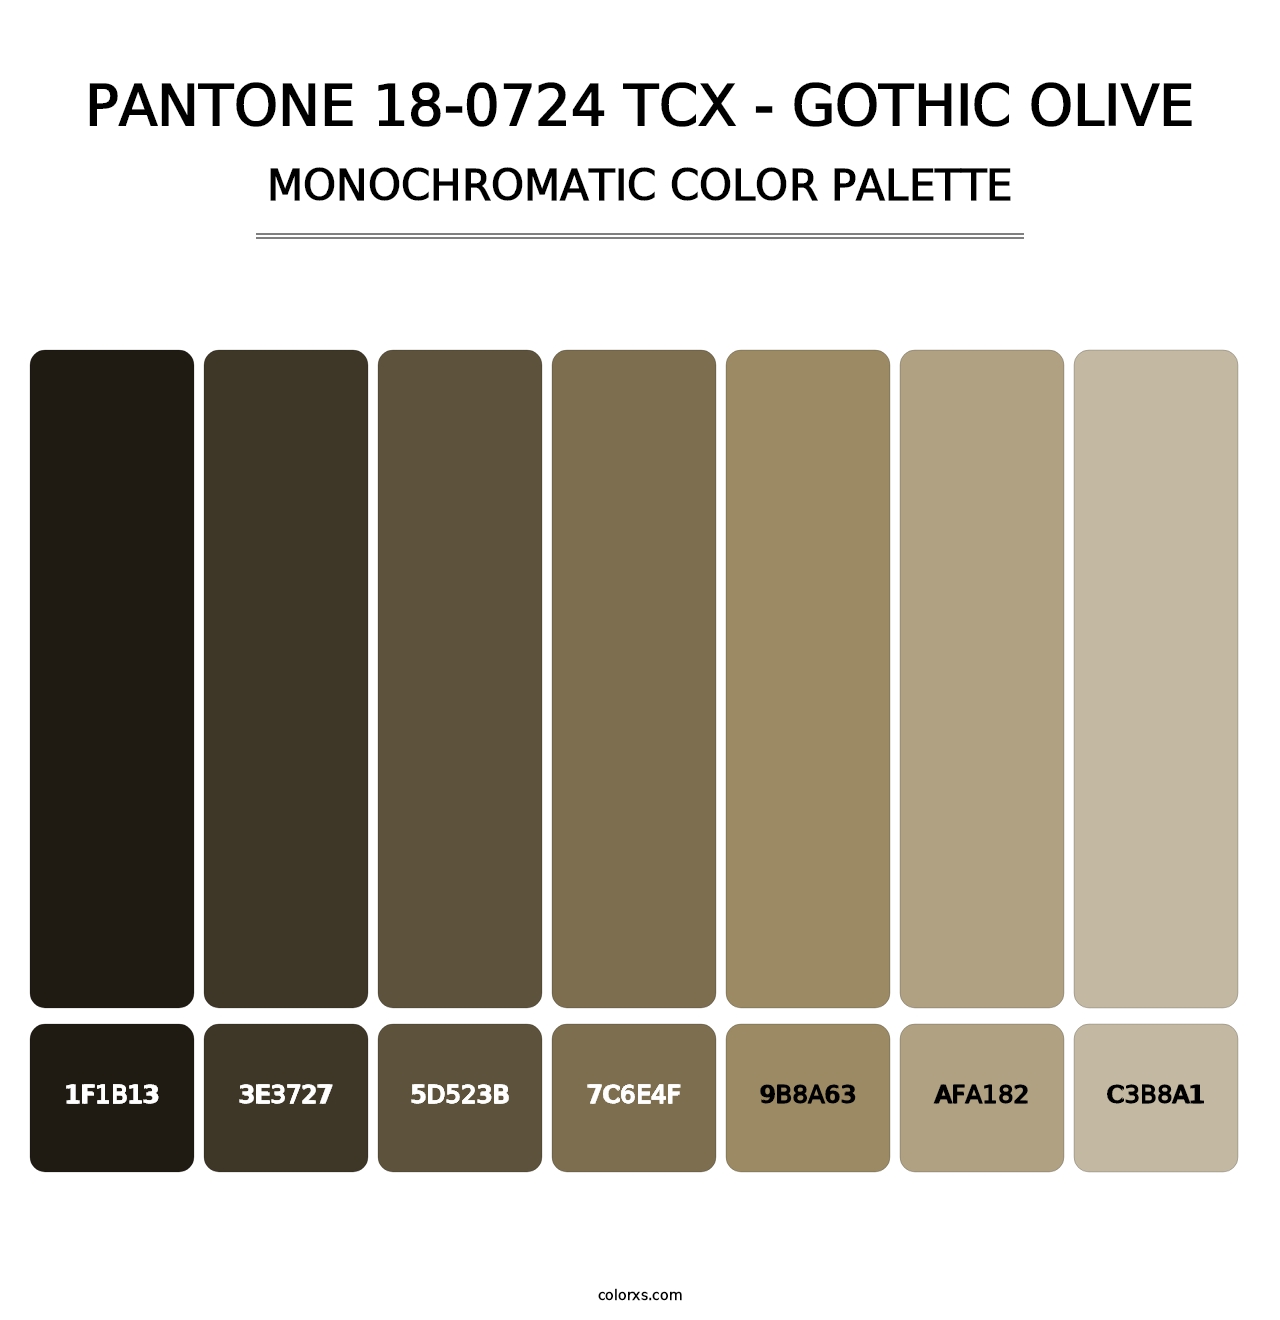 PANTONE 18-0724 TCX - Gothic Olive - Monochromatic Color Palette